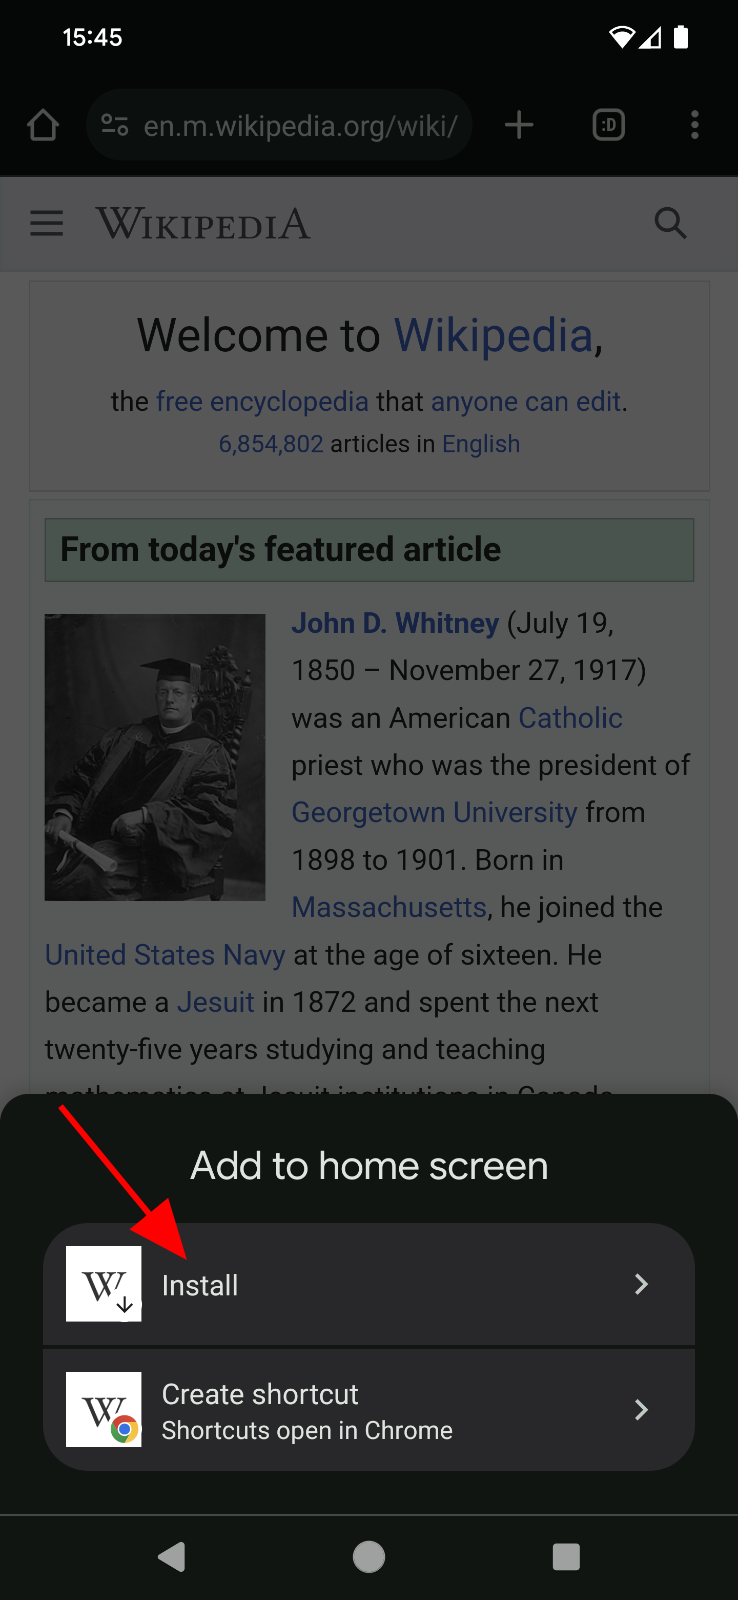 إضافة إلى مطالبة الشاشة الرئيسية على موقع ويكيبيديا.